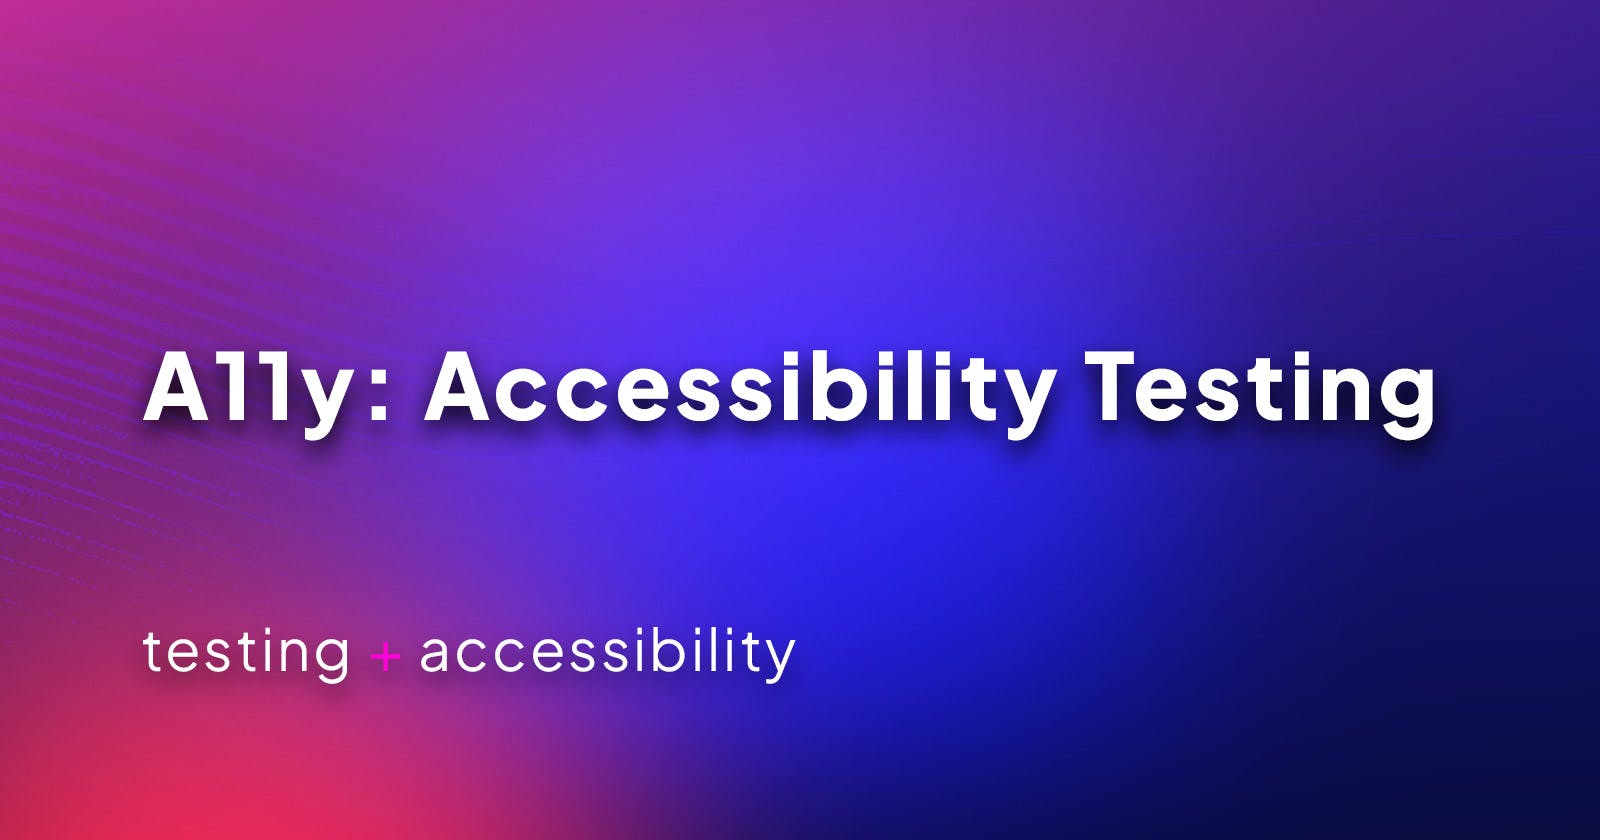 A11y: Accessibility Testing